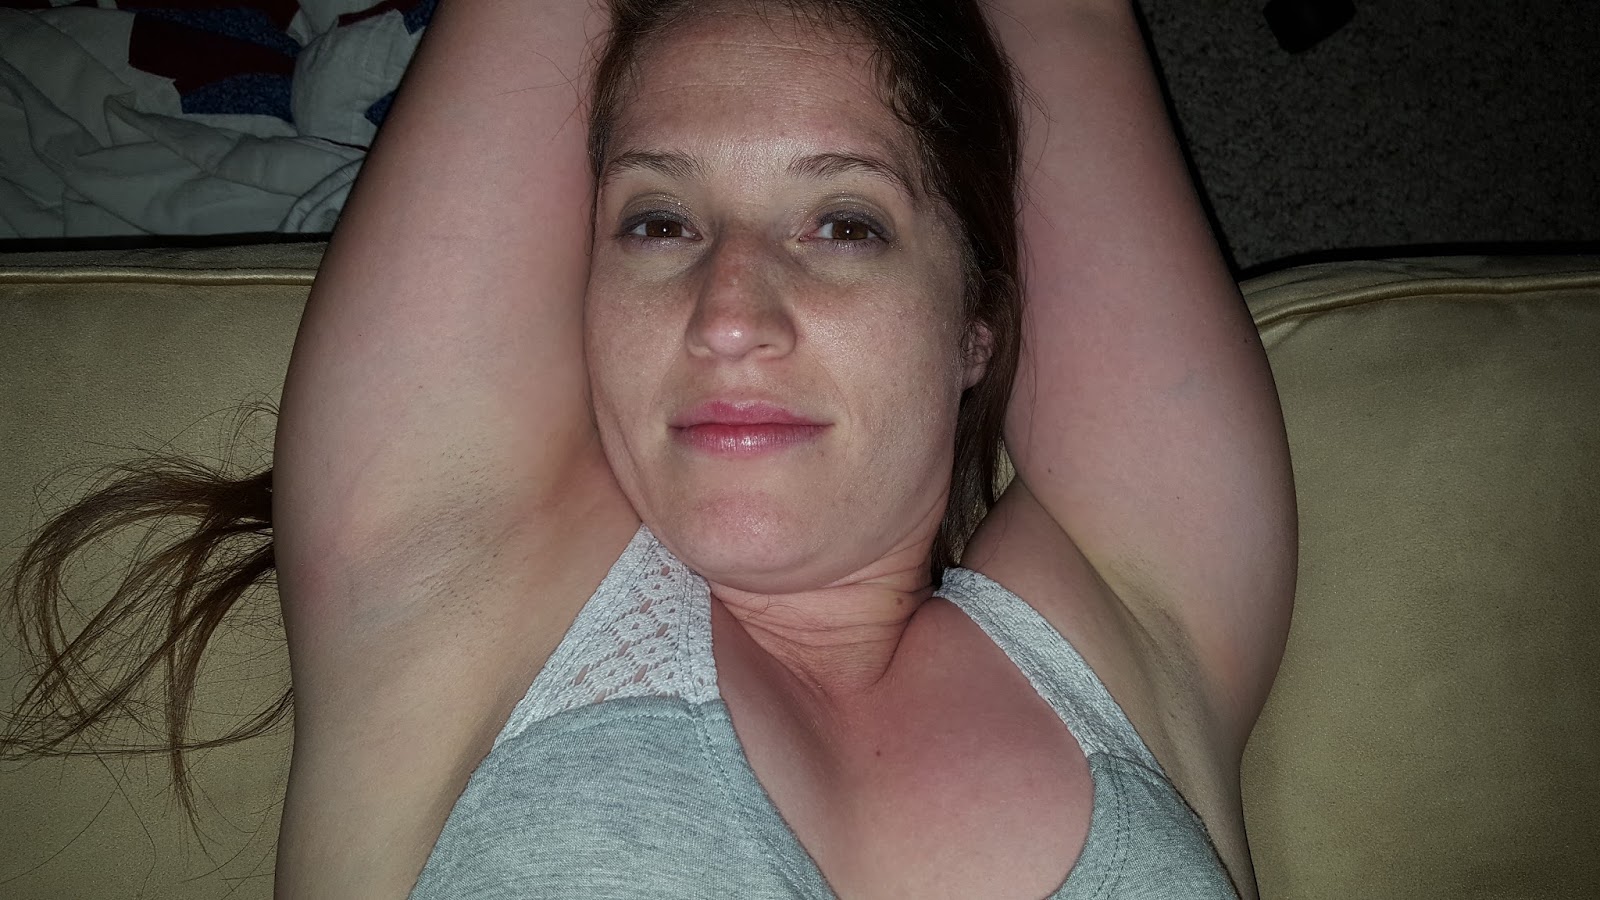 Bbw mom armpit pics